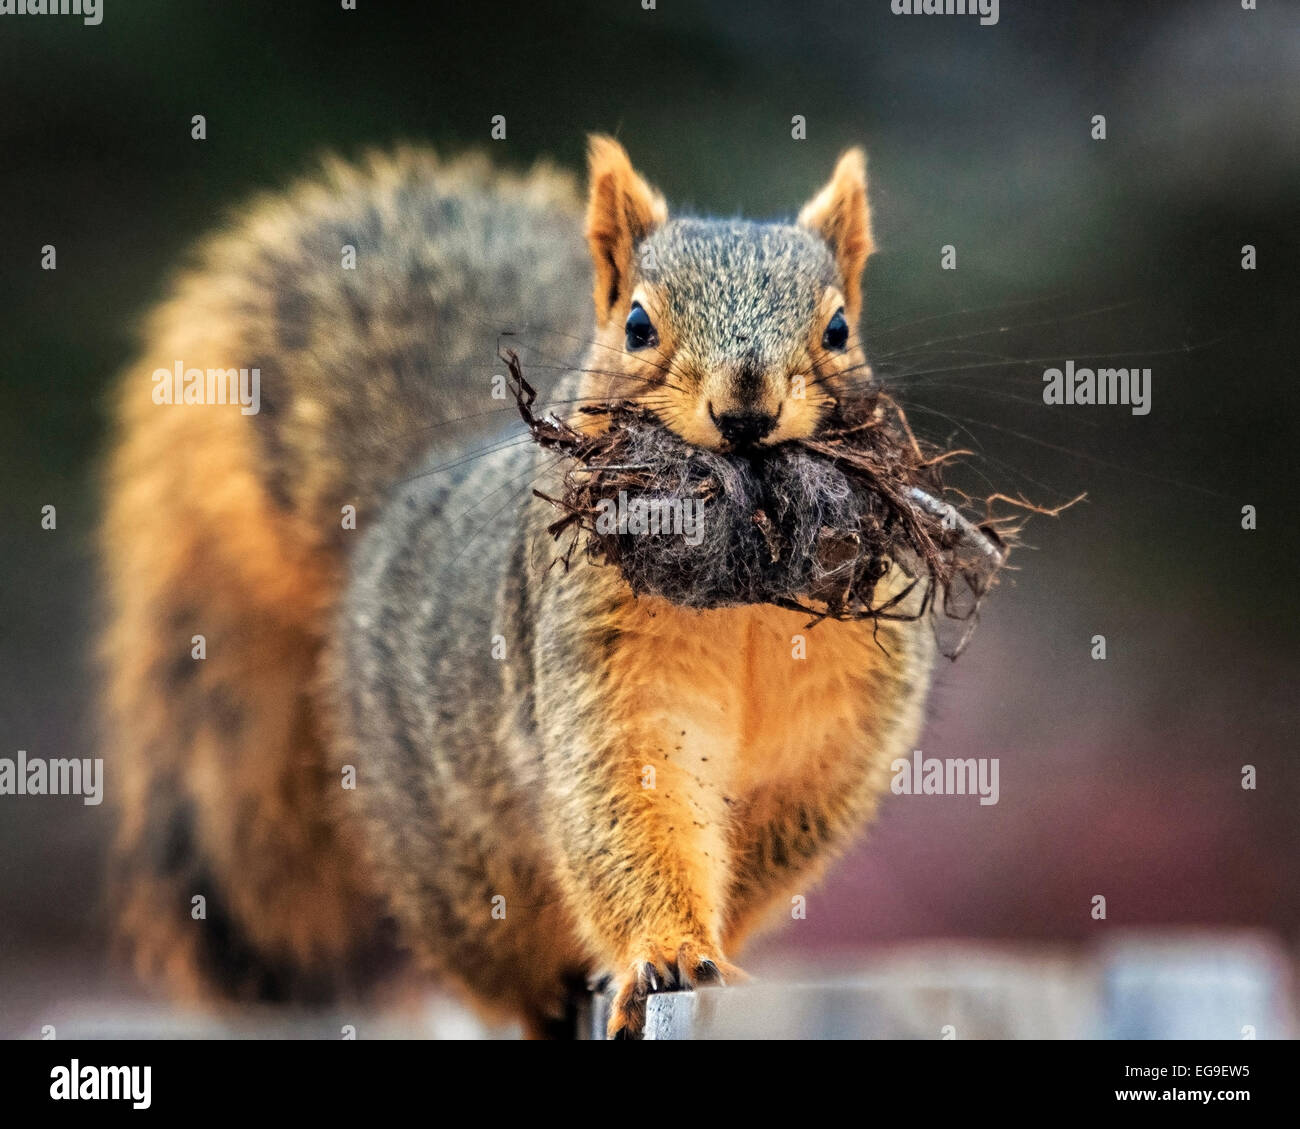 Nahaufnahme des Eichhörnchens mit Wurzeln im Mund Stockfoto